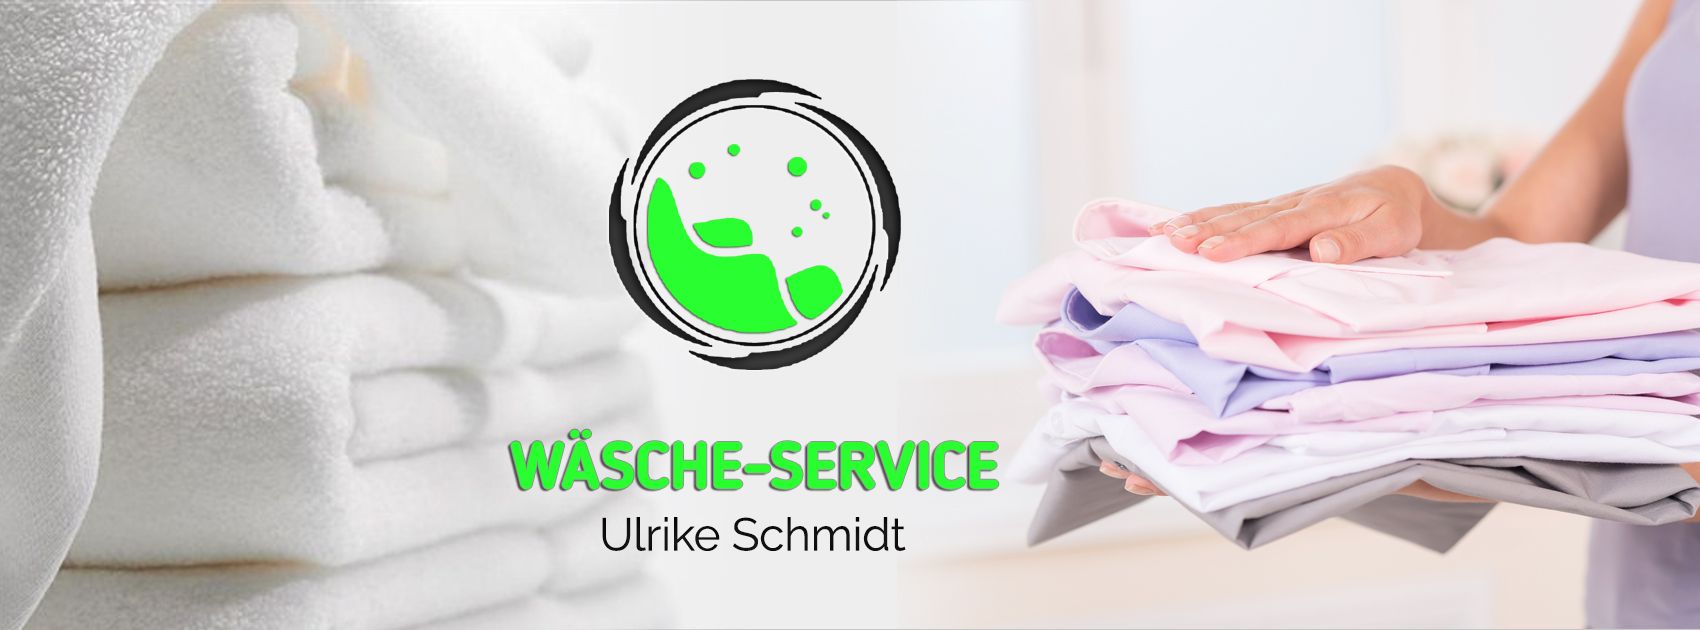 Wäsche - Service | Wäsche-Service Ulrike Schmidt